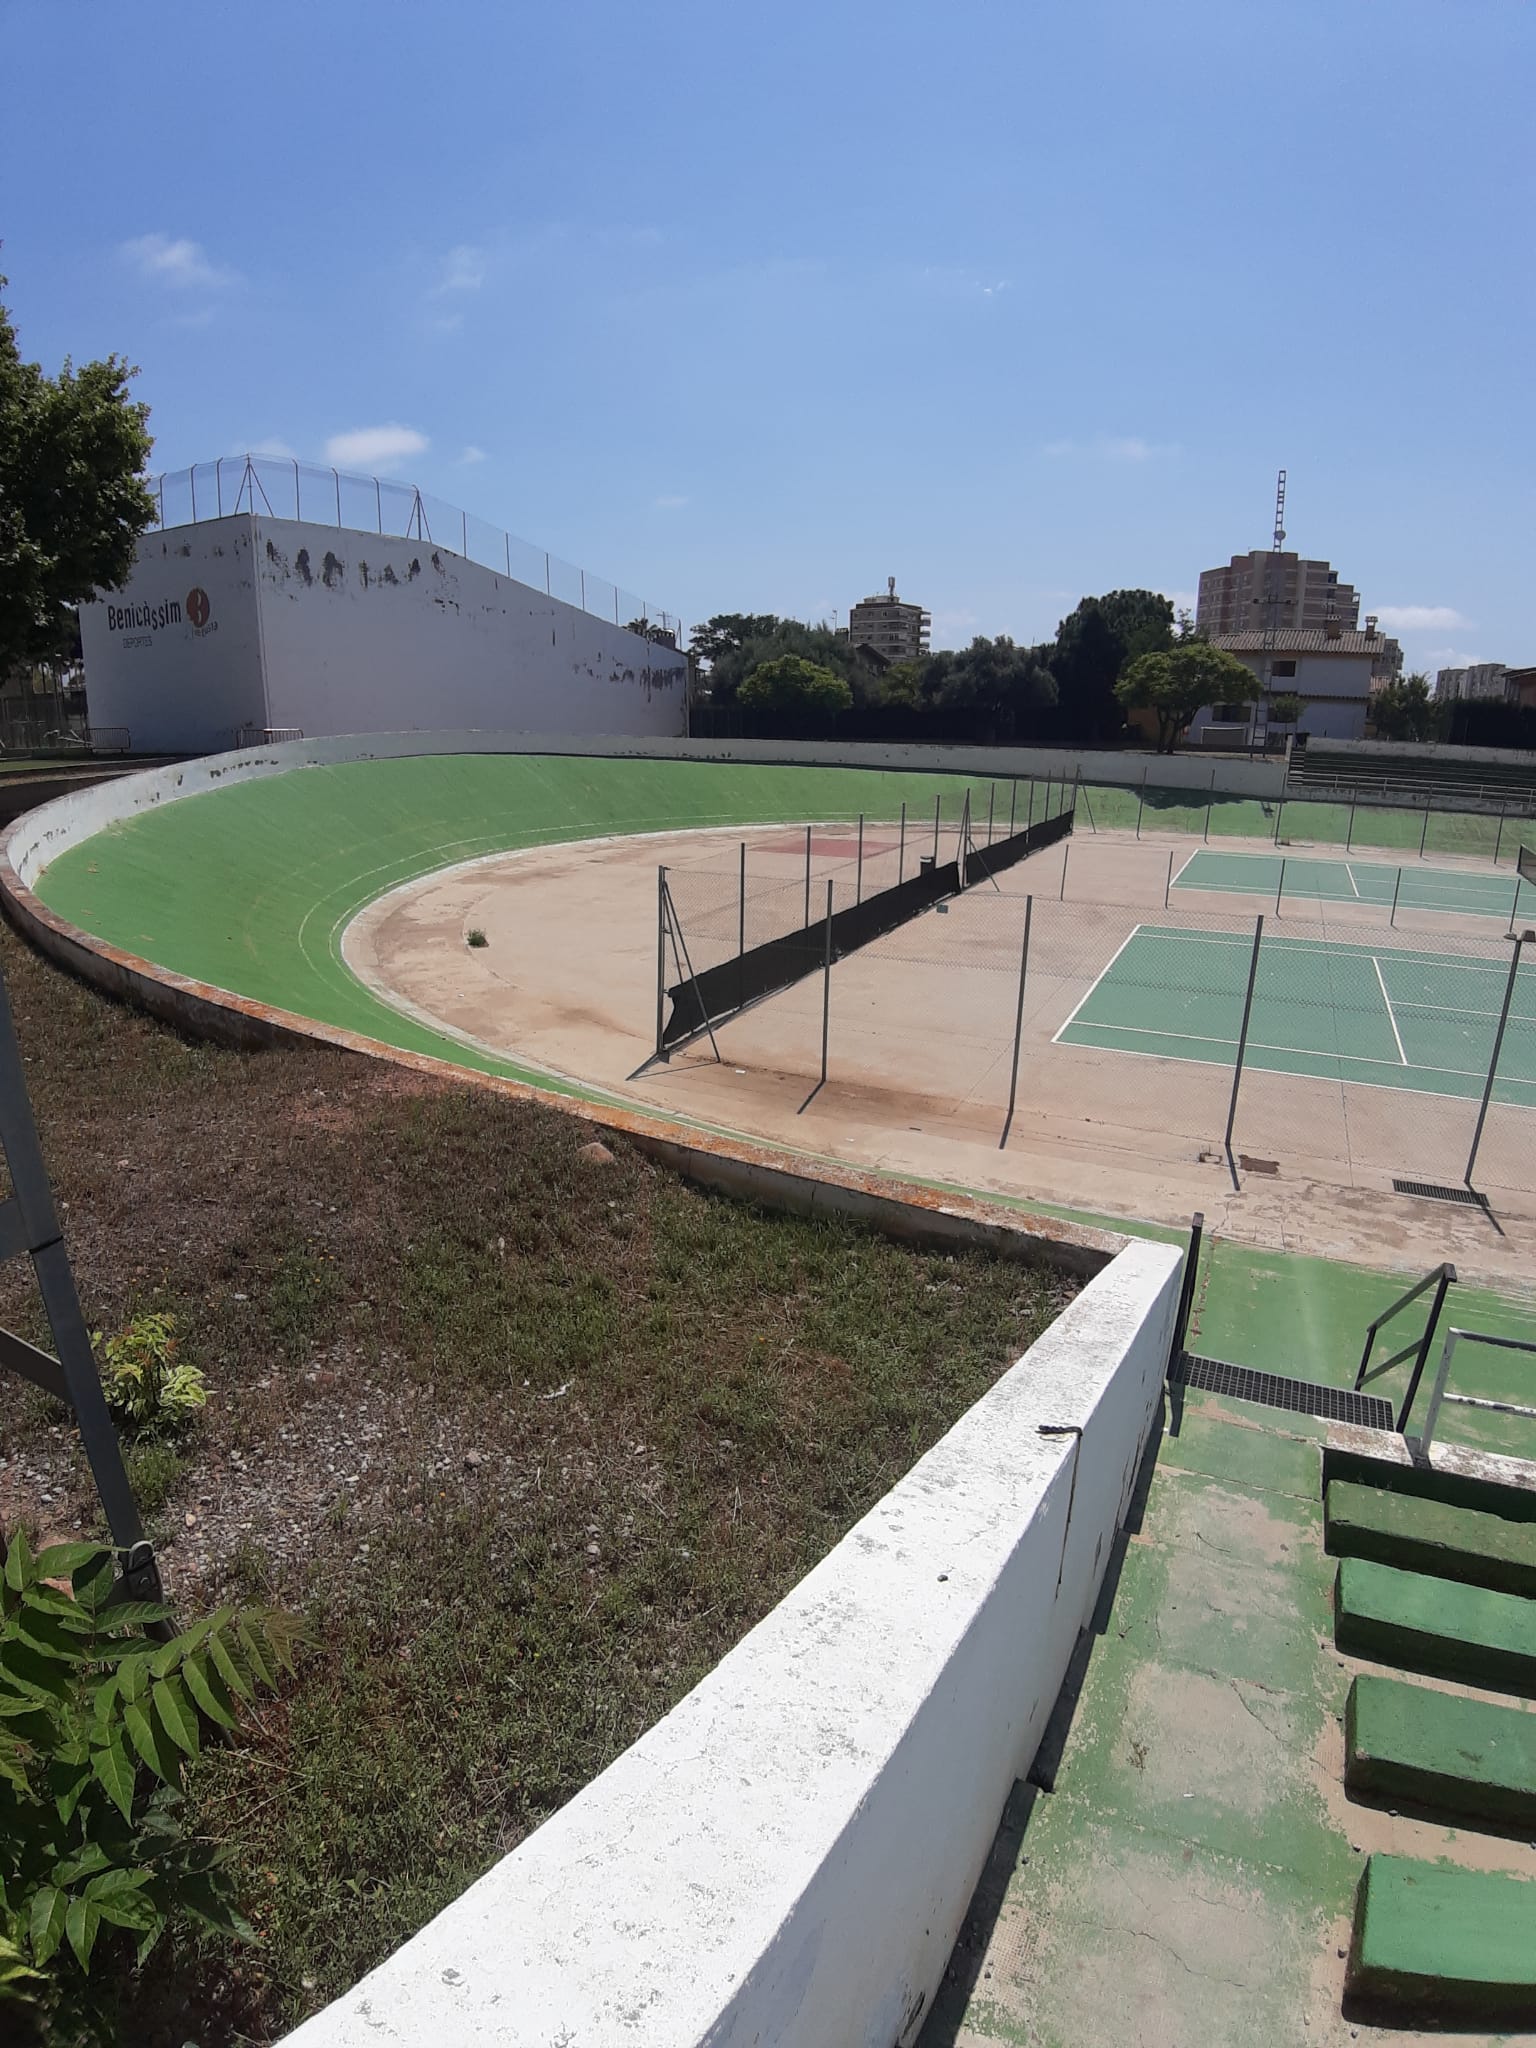 Alcalde (PSPV-PSOE) propone construir un segundo polideportivo en Benicàssim para cubrir la demanda deportiva y cultural del municipio